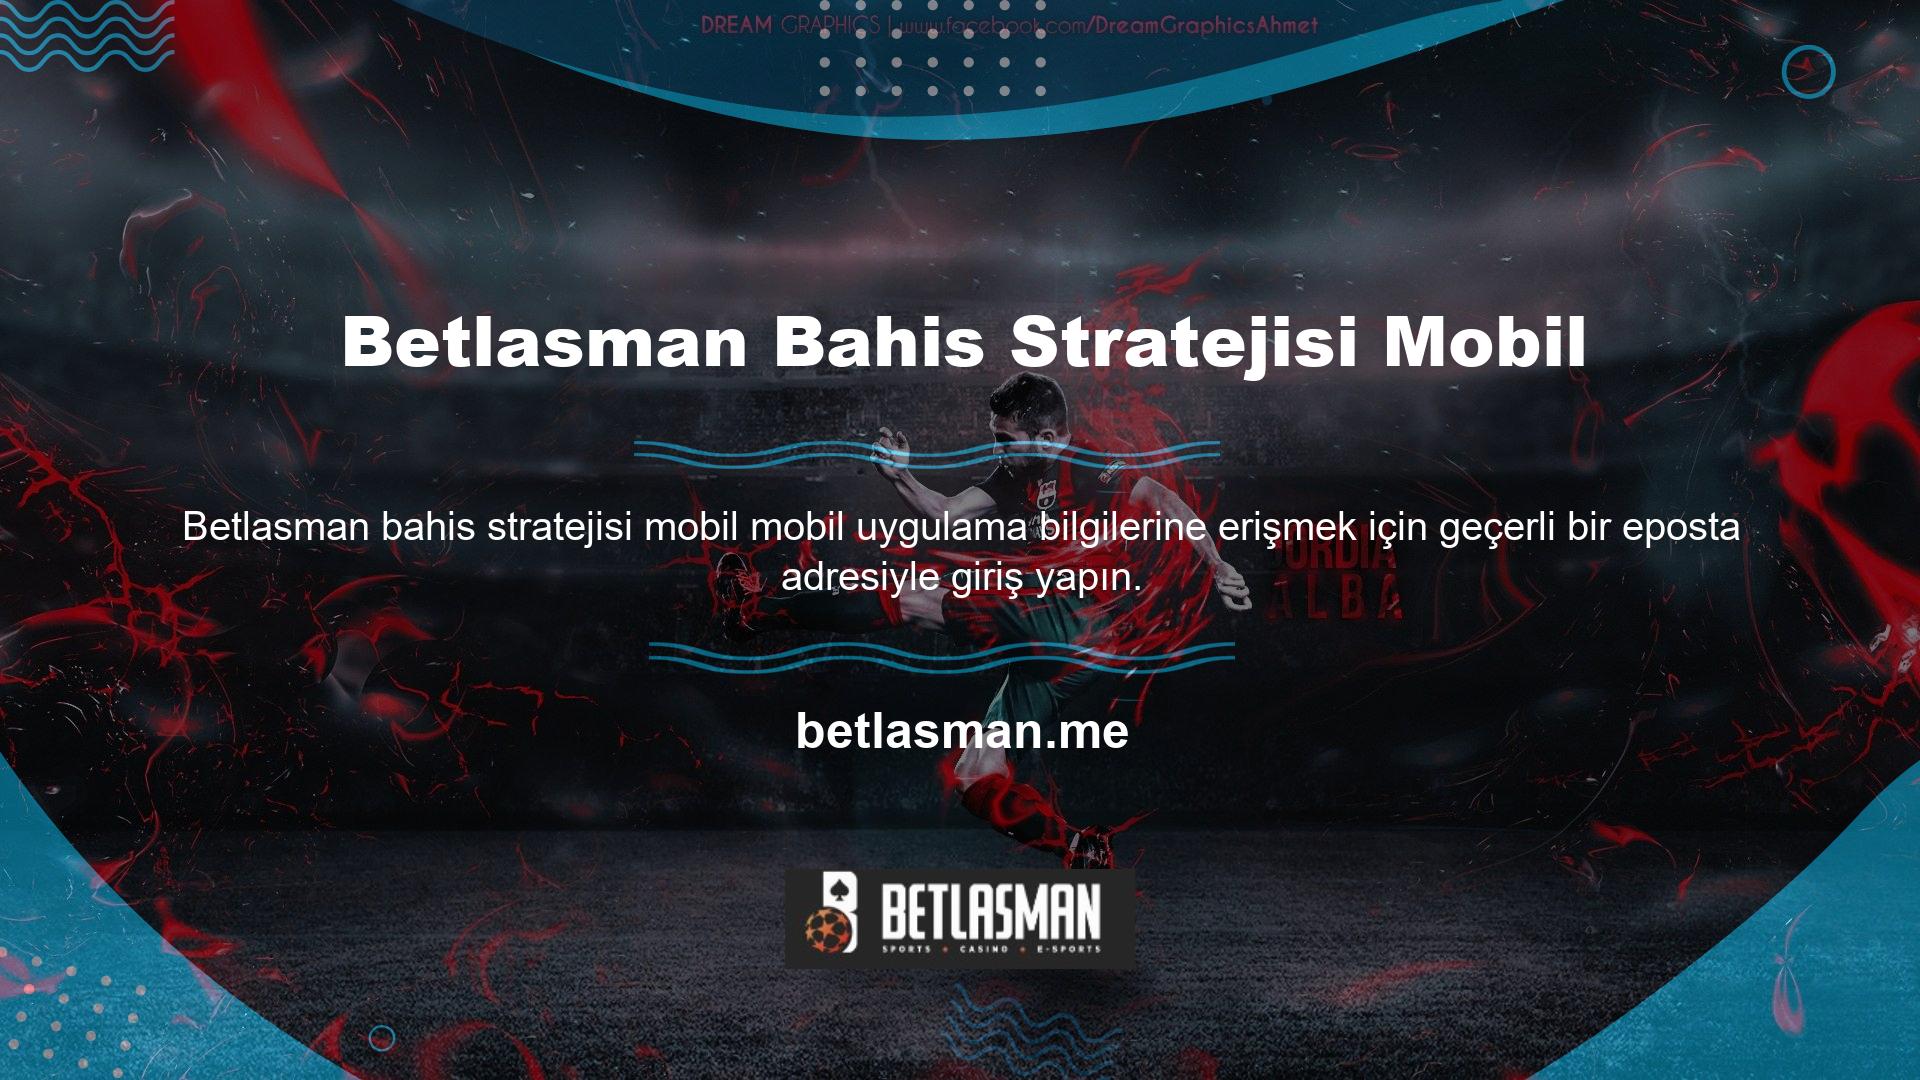 Betlasman mobil tenis bahis stratejisi web sitesinin mobil versiyonu, masaüstü bilgisayarınızdan erişebileceğiniz bir tema ve kullanıcı arayüzüne sahiptir